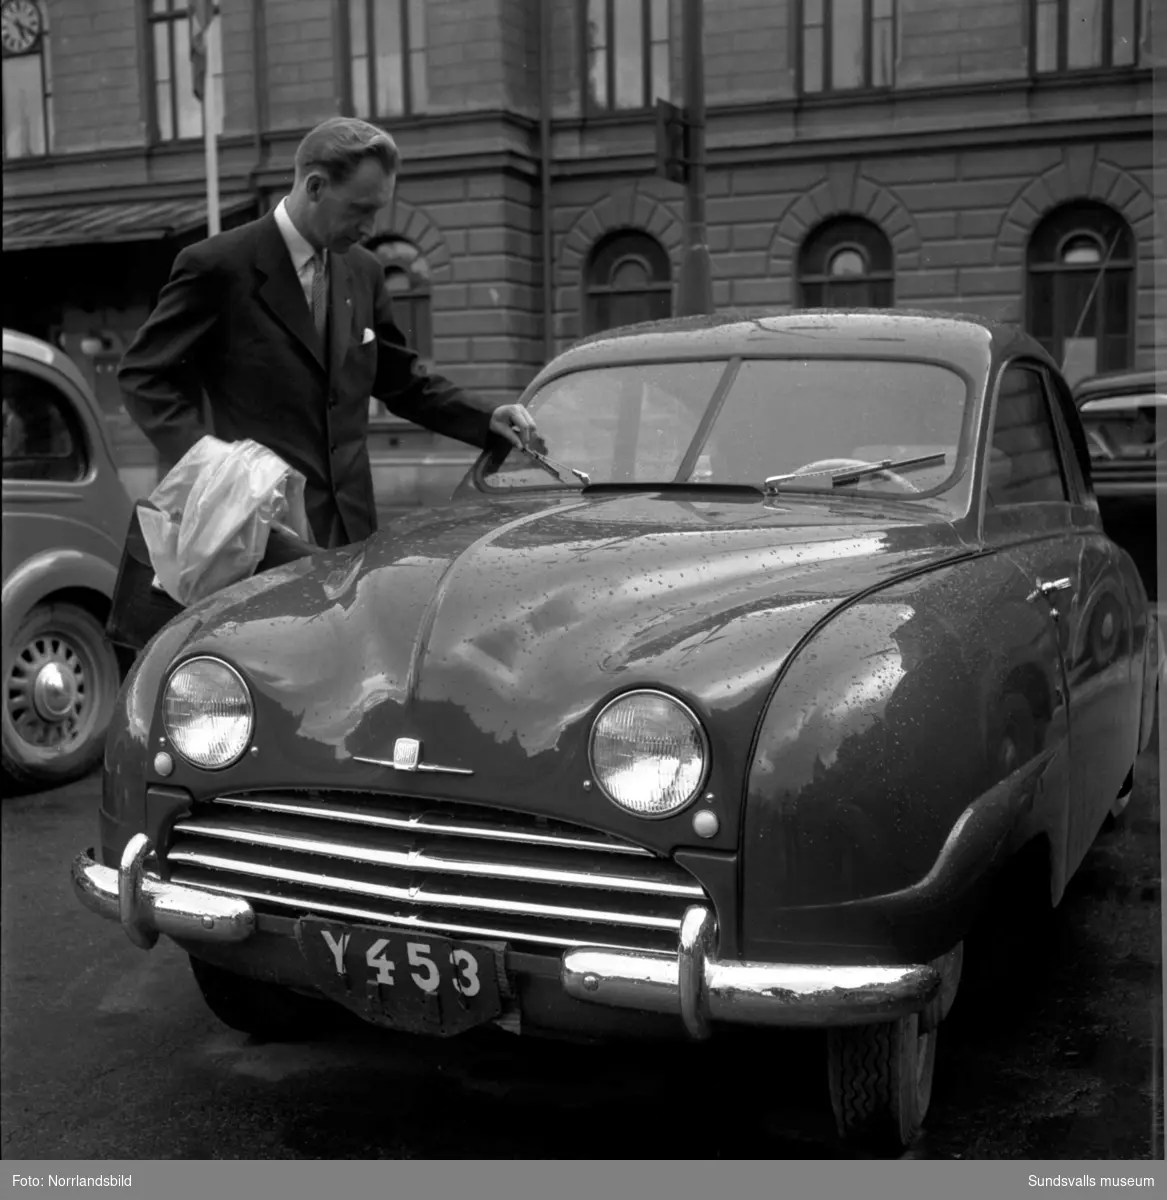 En man bredvid en Saab med registreringsnummer Y453 utanför Stadshuset.